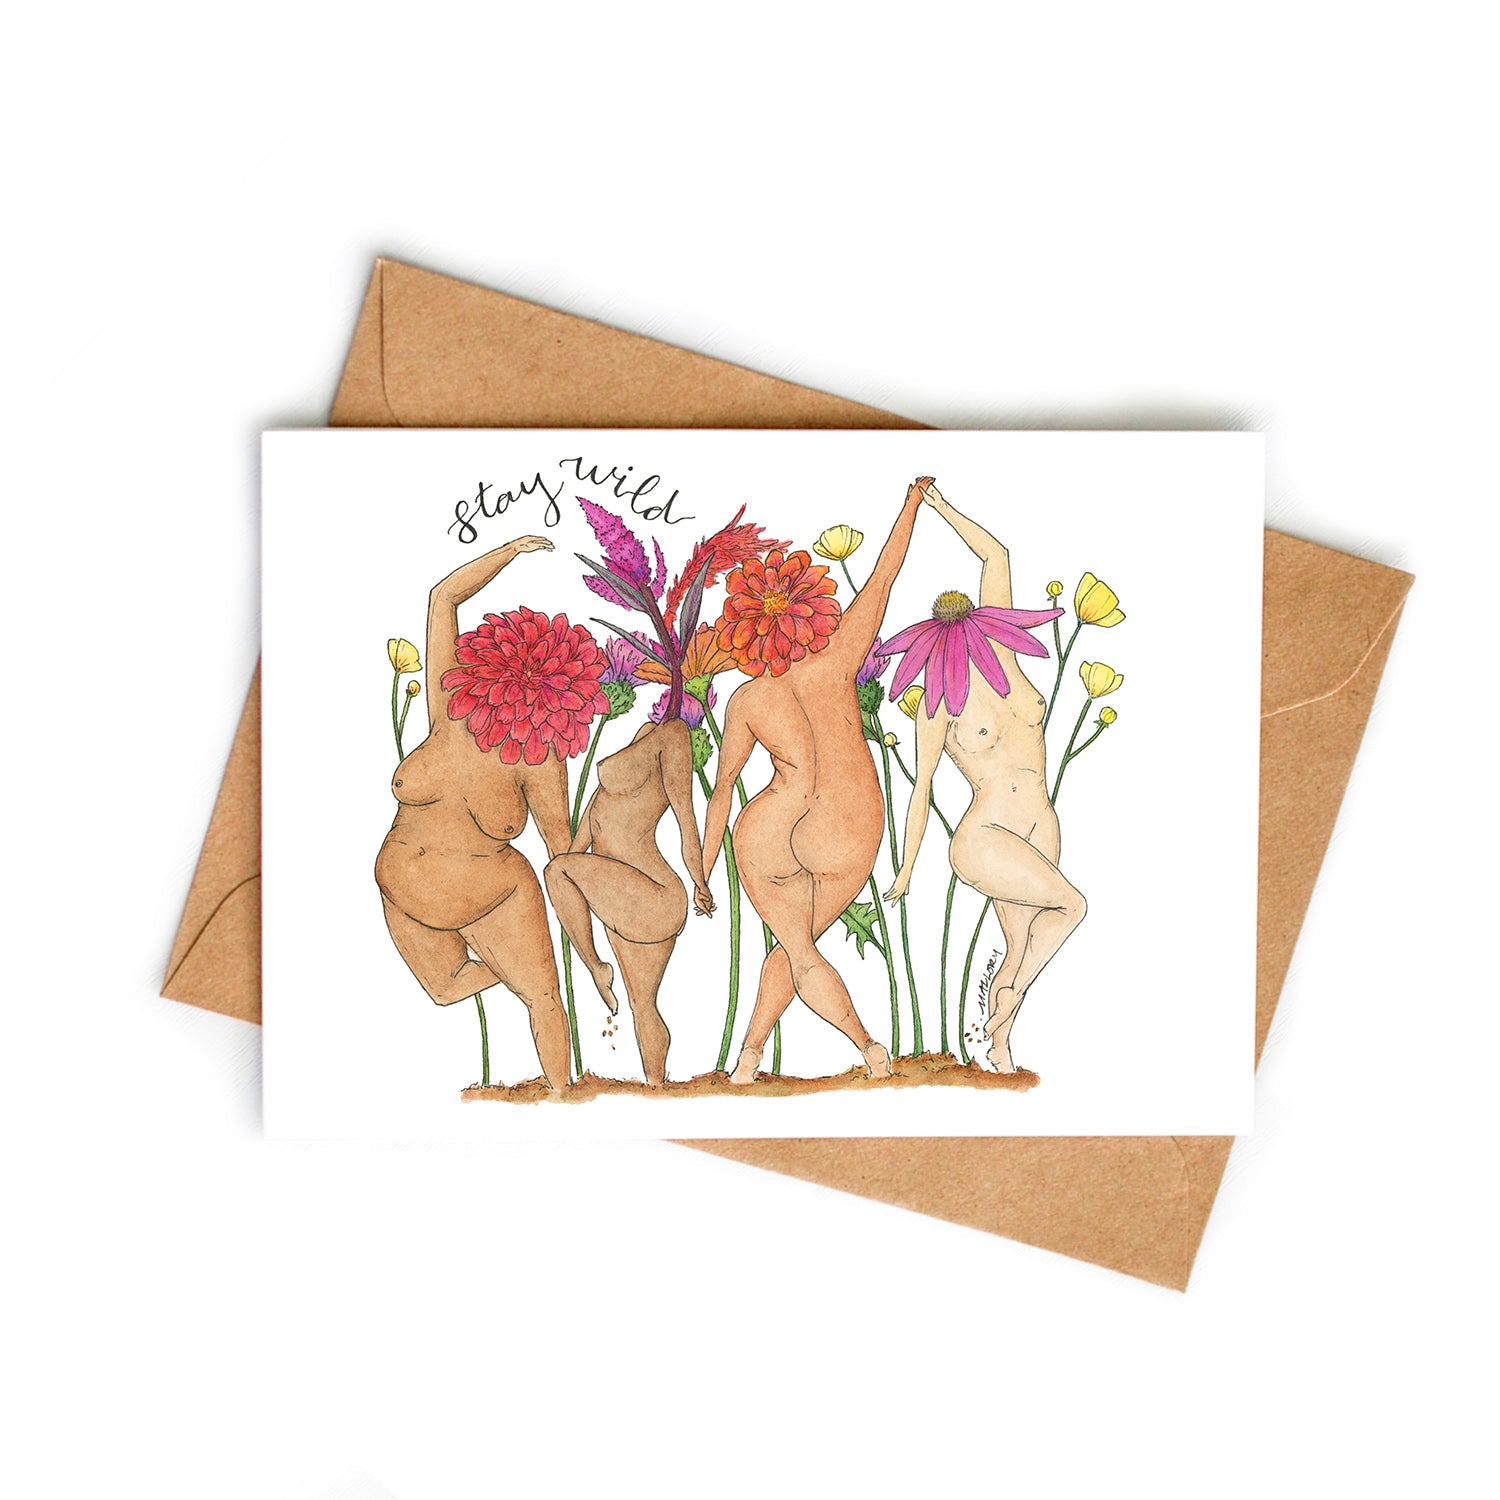 Stay Wild Wildflower Ladies Watercolor Art Card